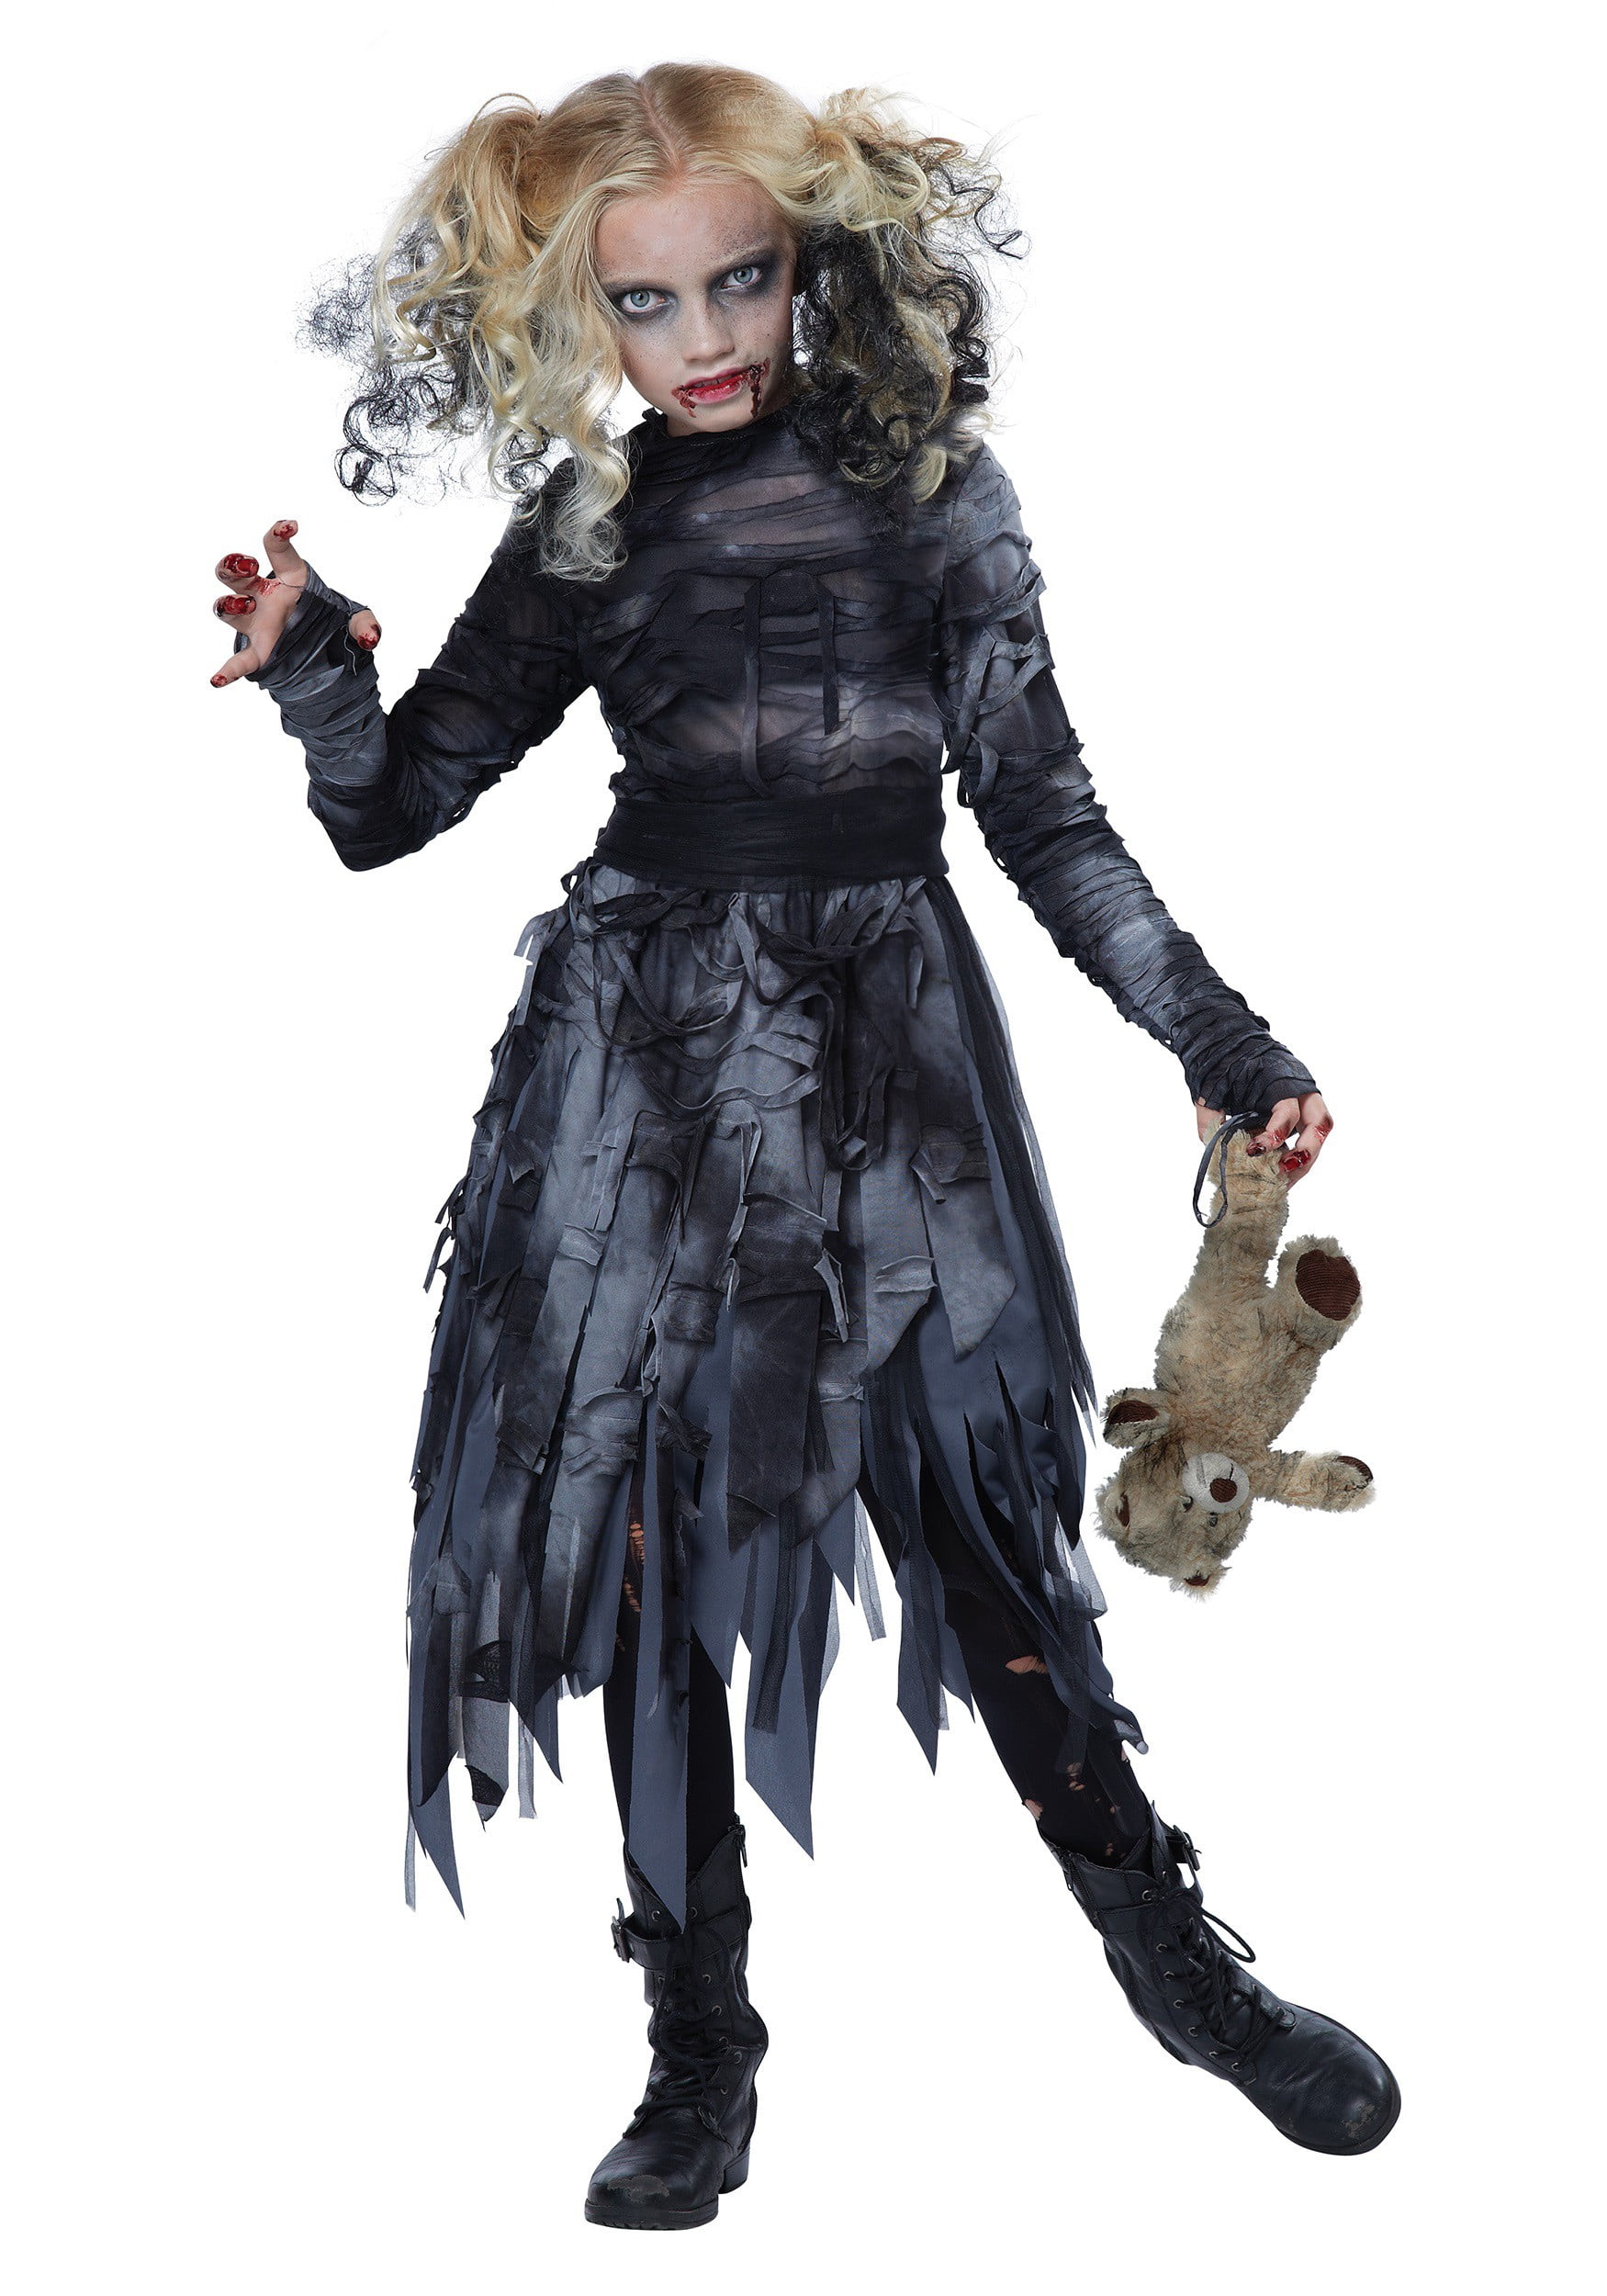 Kids Girls Boys Halloween Costume Skeleton Grim Reaper Zombie Fancy Dress Outfit 